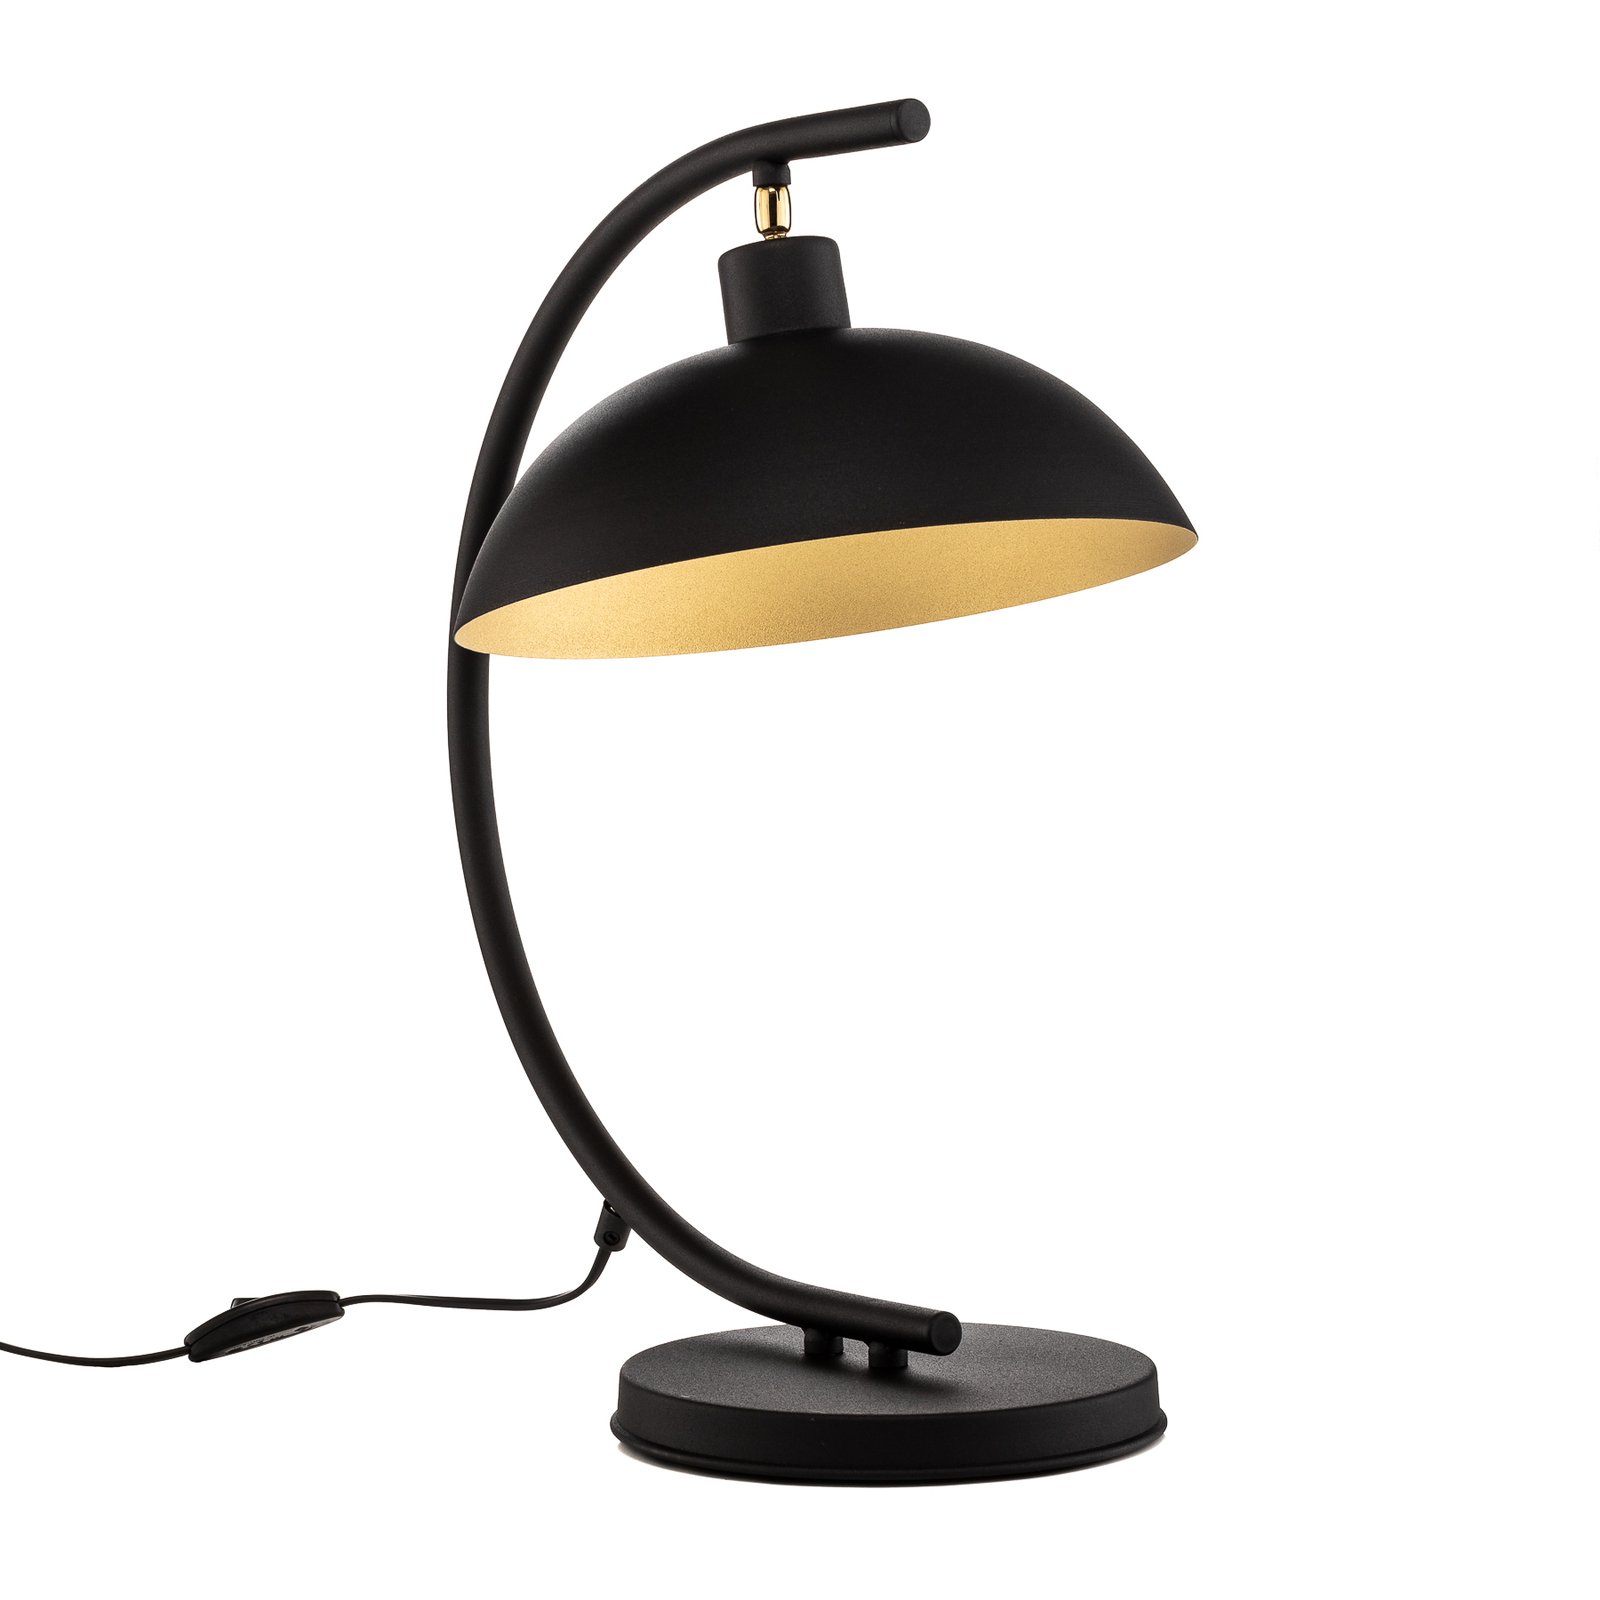 Tafellamp 1036, 1-lamp, zwart-goud